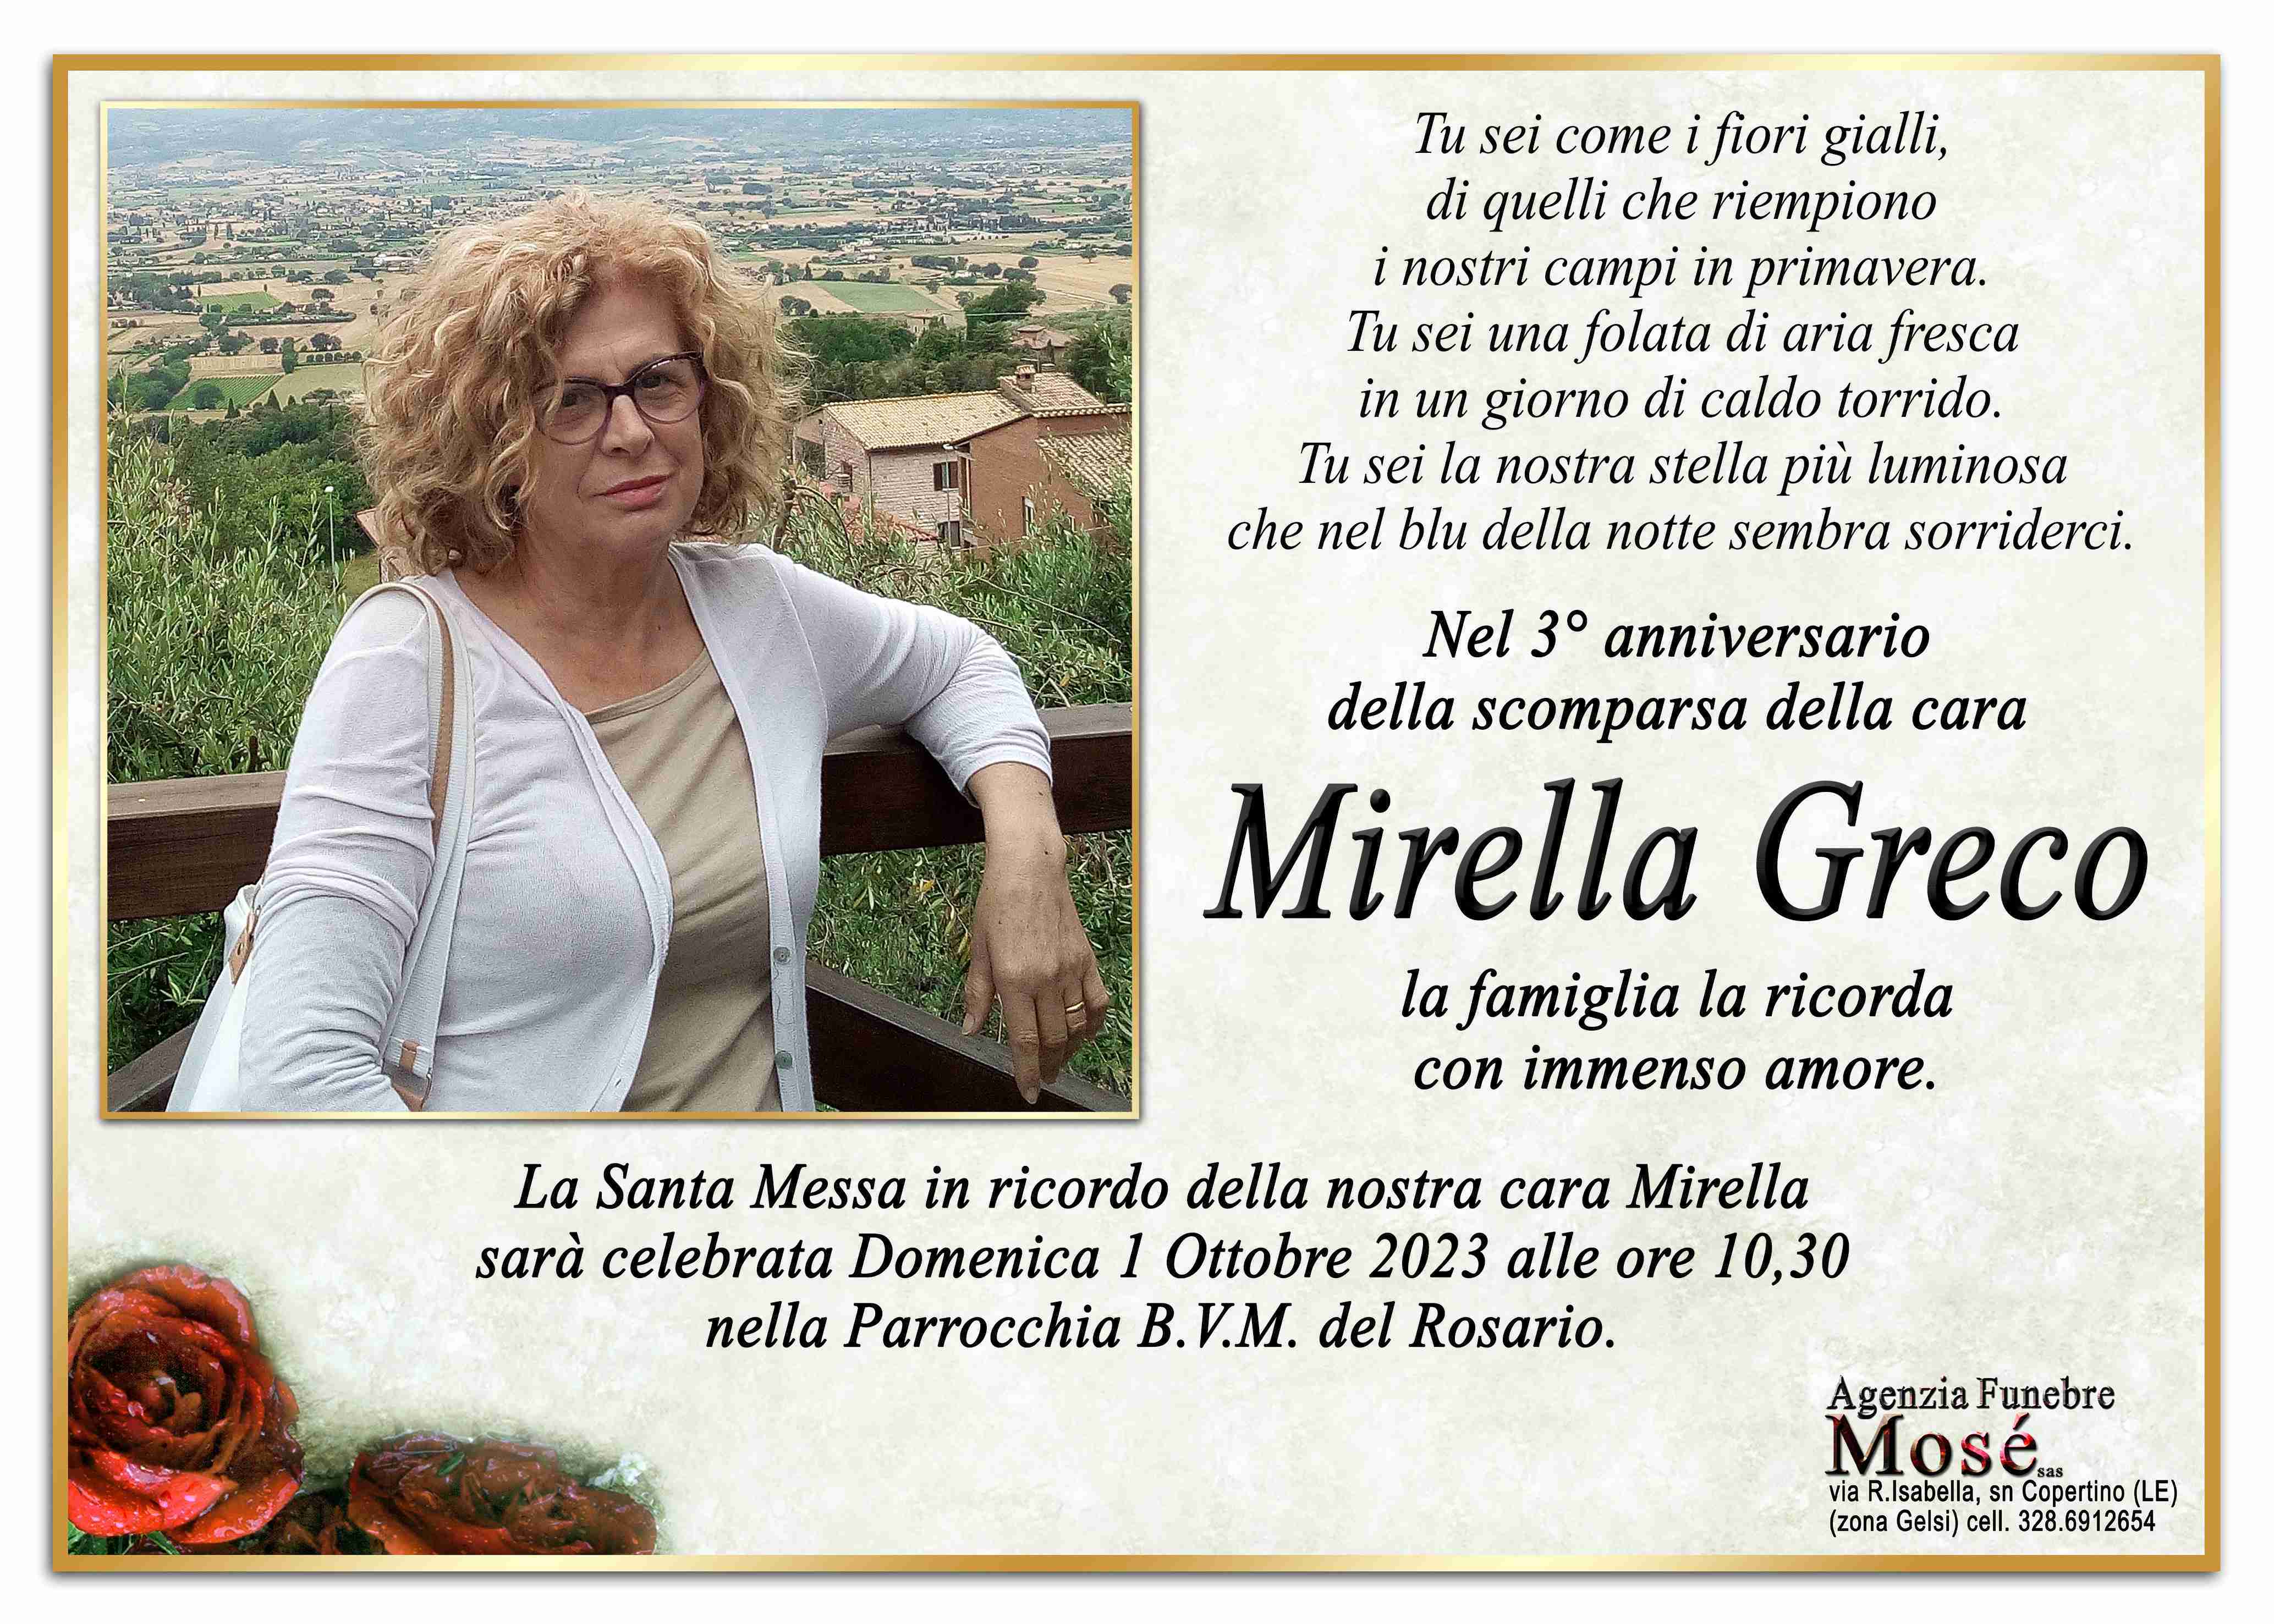 Mirella Greco